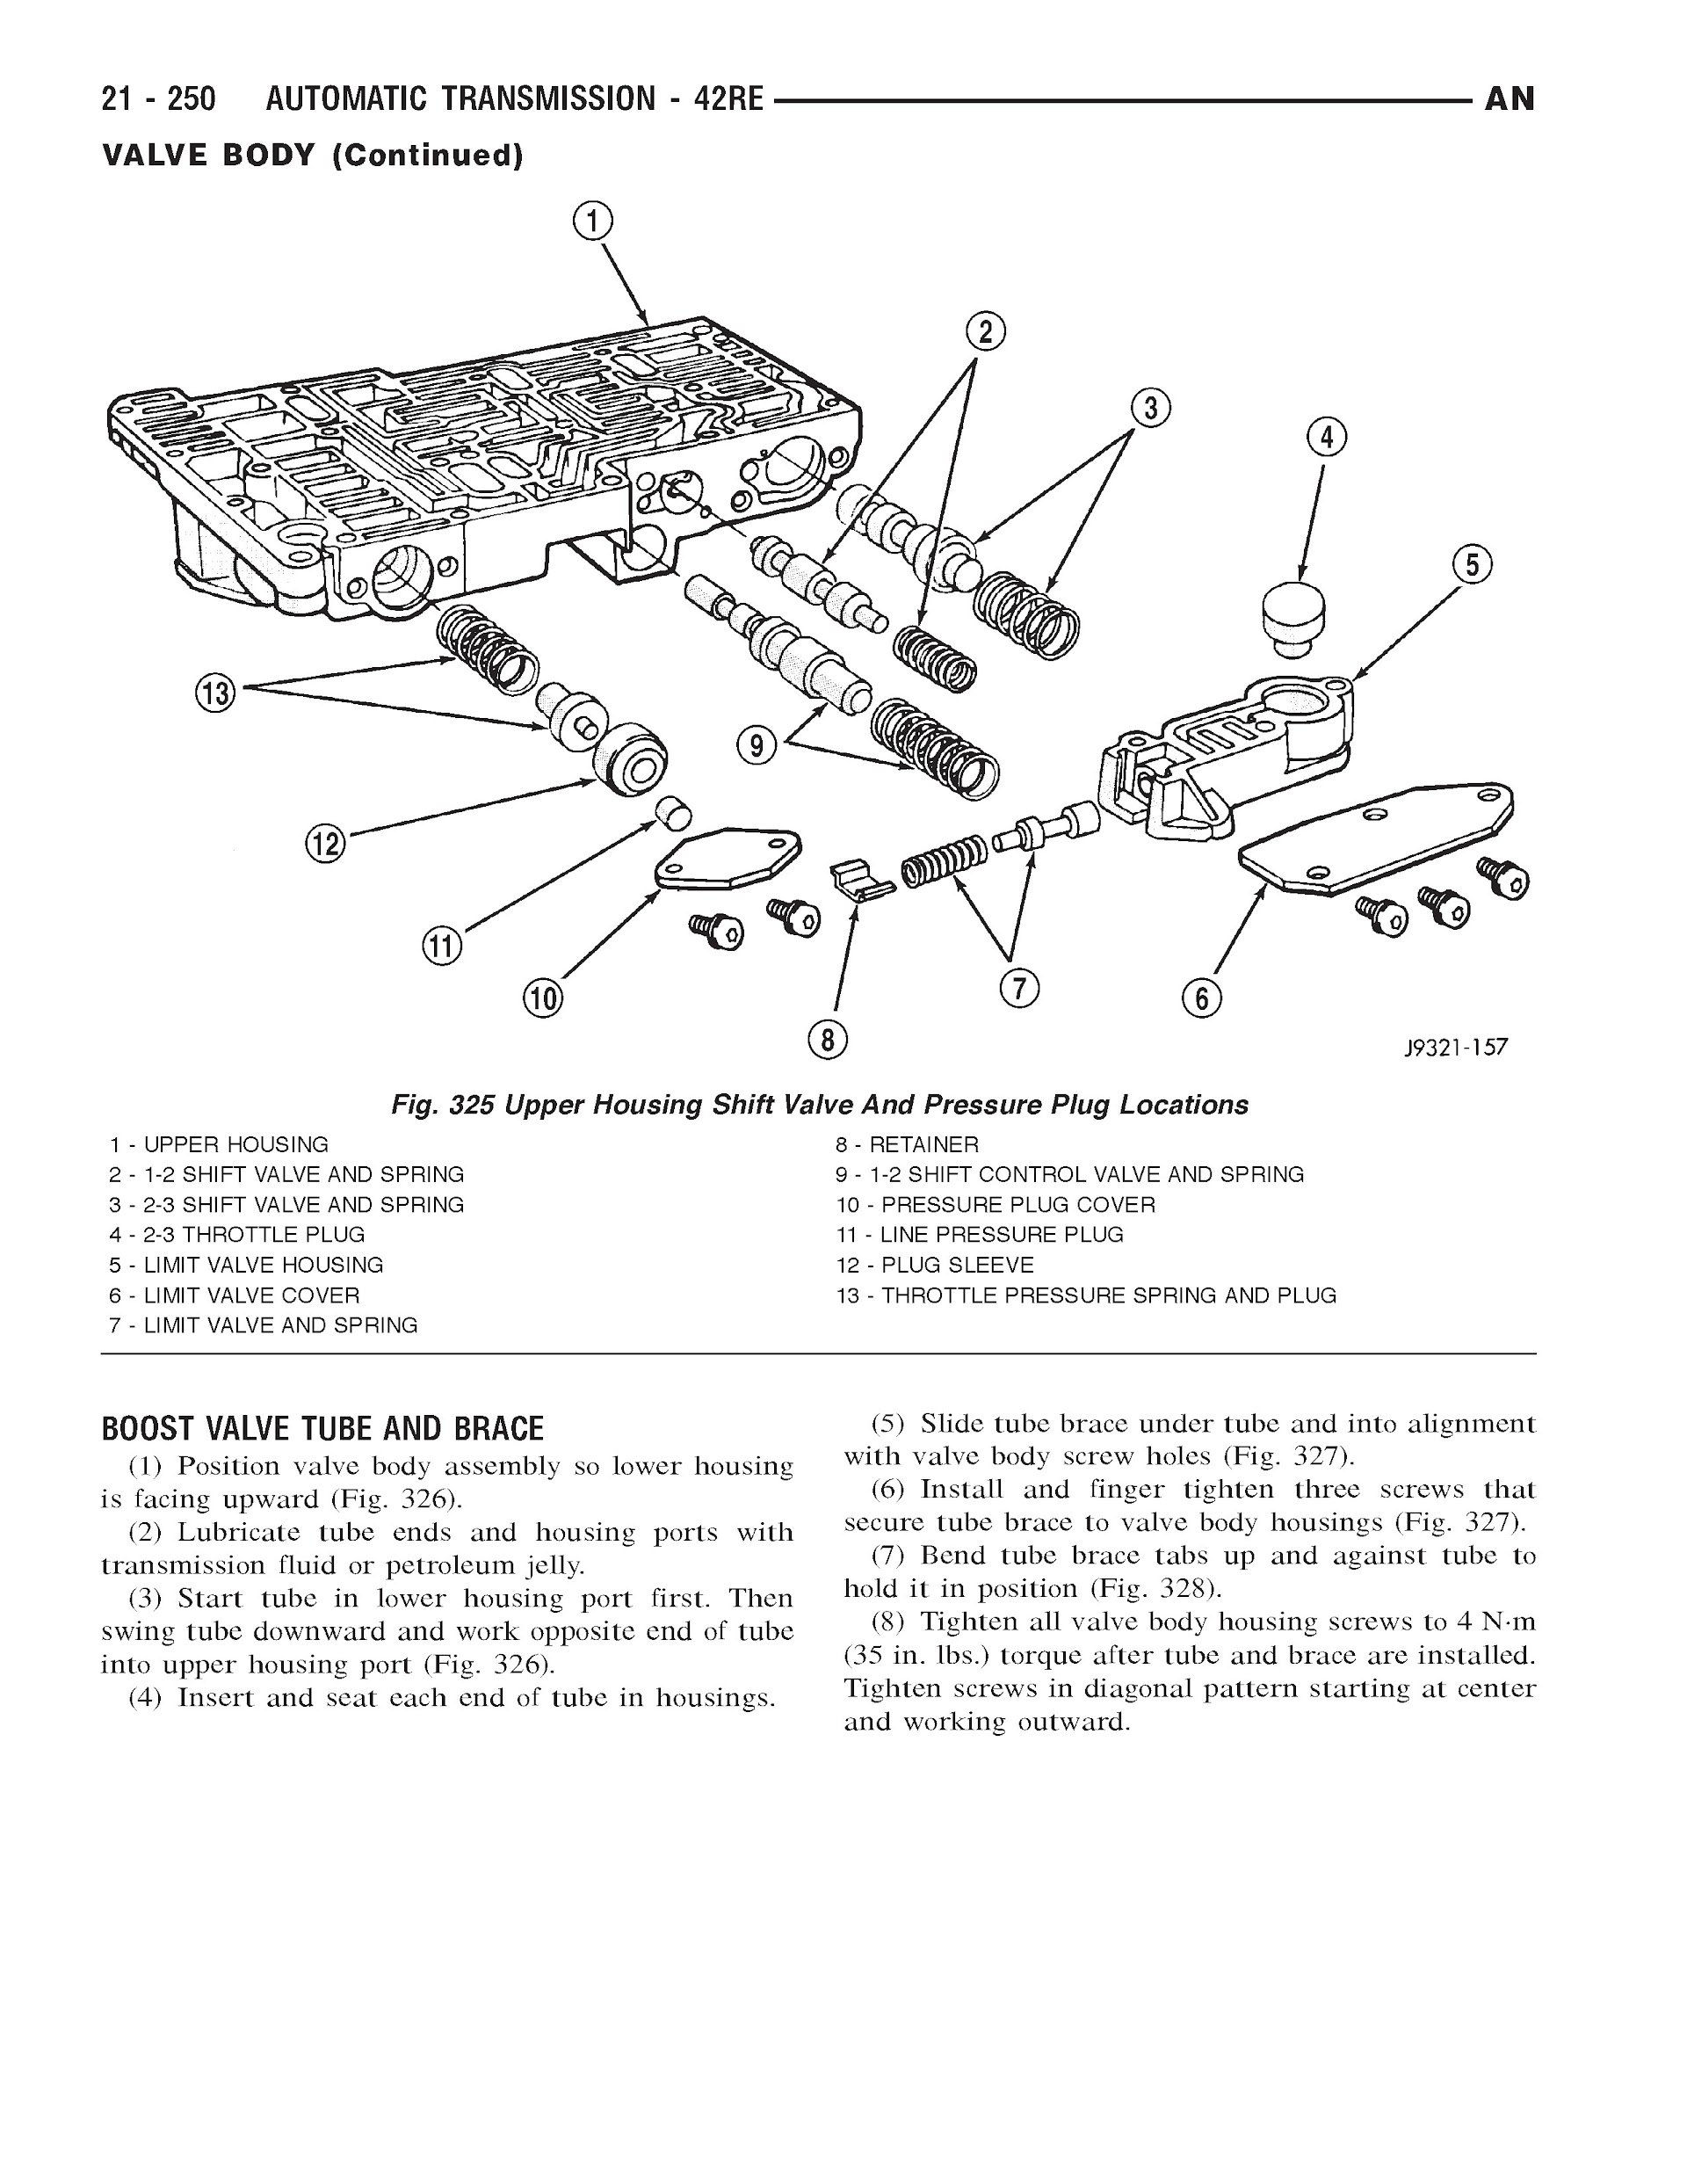 2001-2003 Dodge Dakota Repair Manual